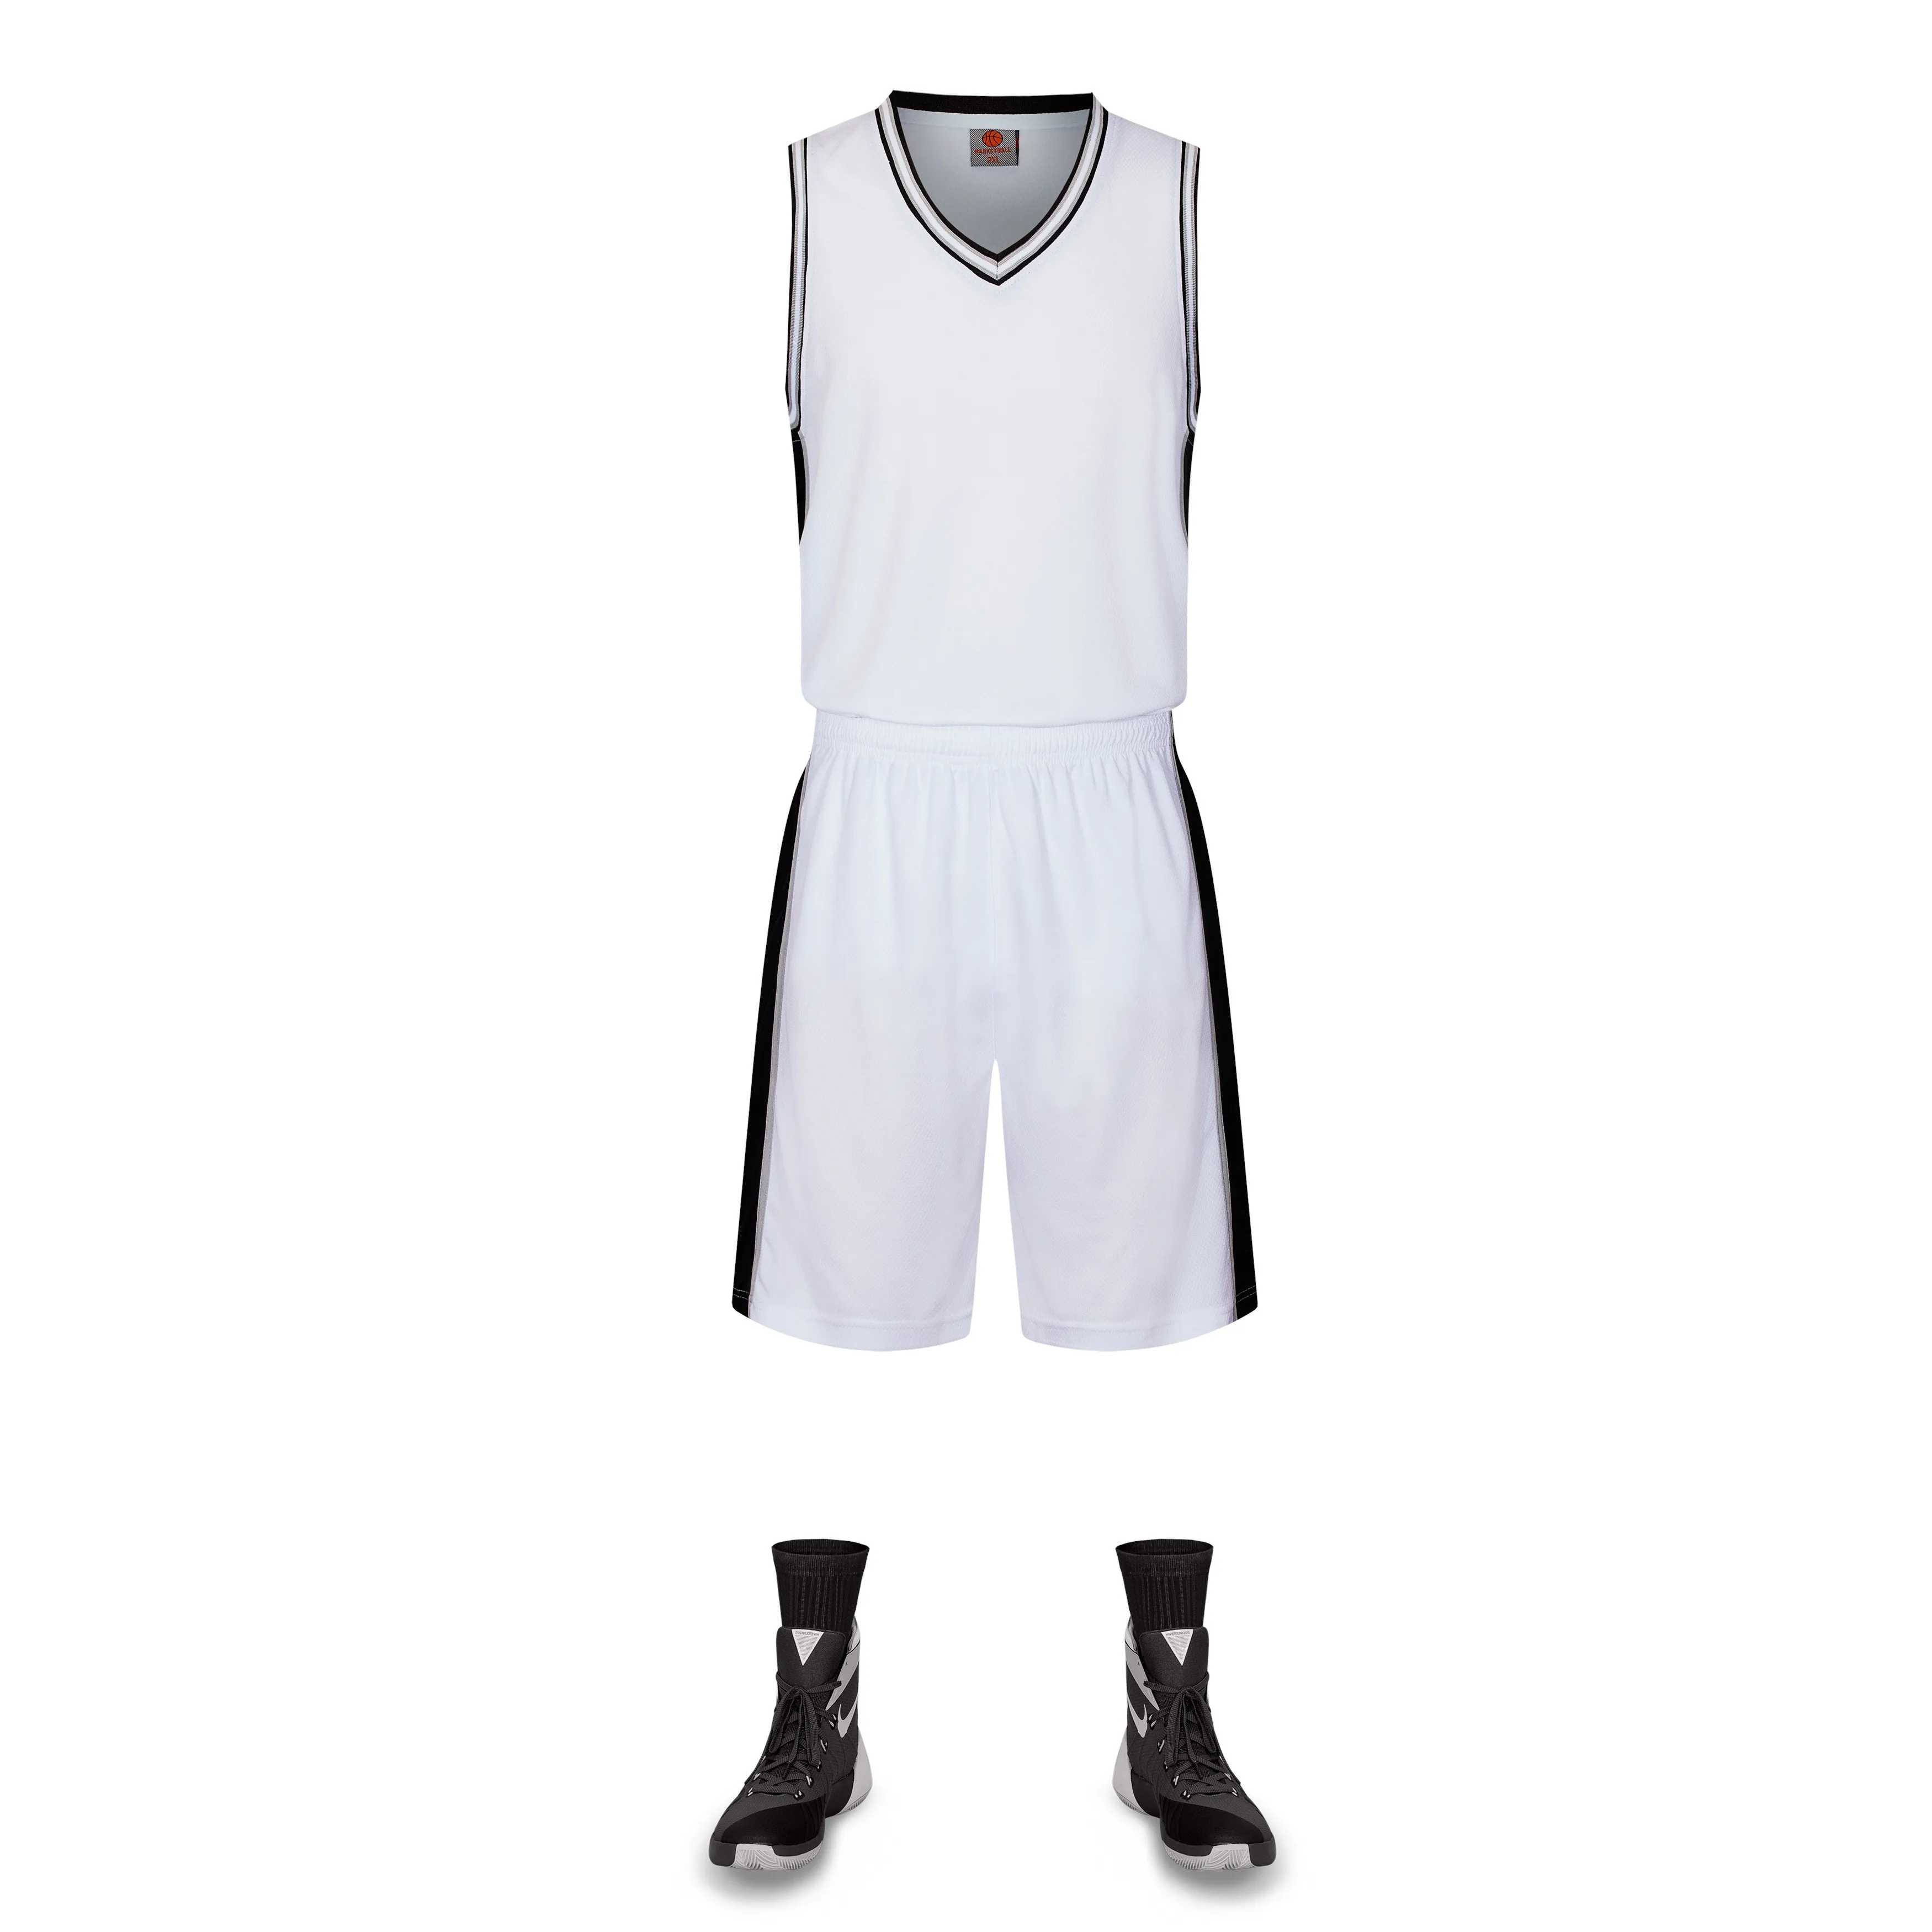 LiDong новые баскетбольные майки спортивная форма без рукавов рубашки и шорты команды тренировочные комплекты, самостоятельная настройка доступны 102 - Цвет: white